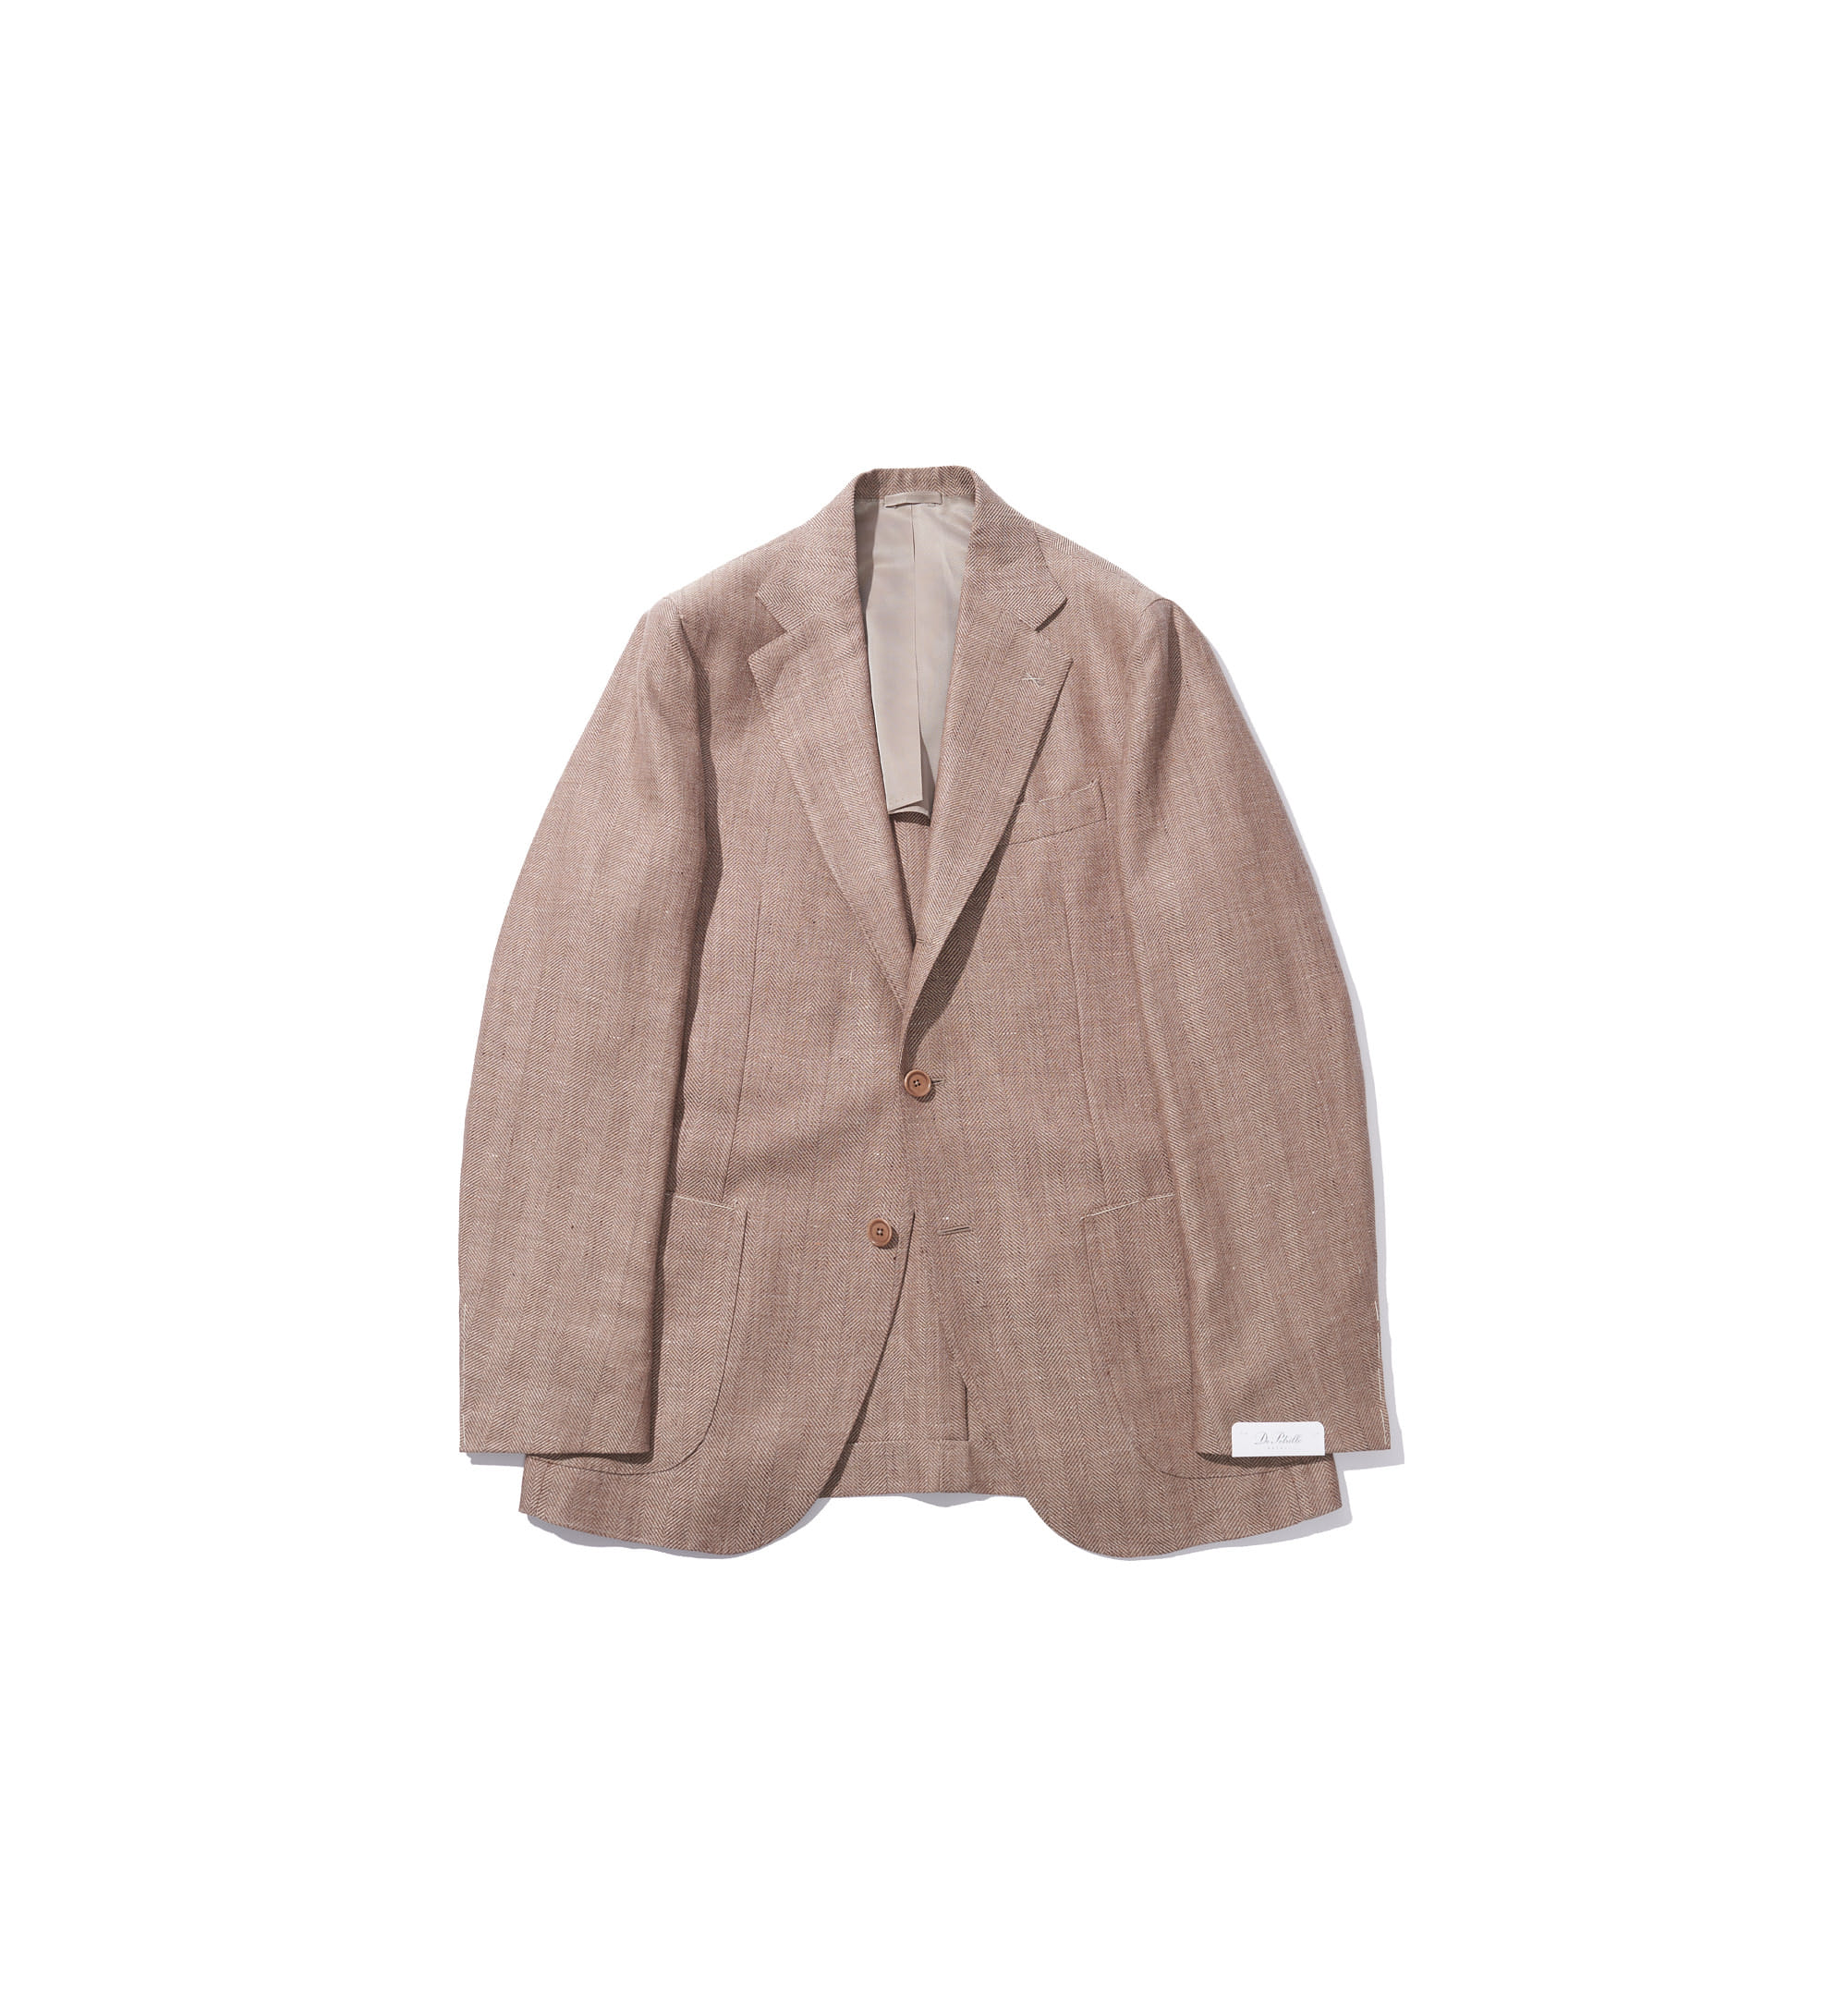 Posillipo Jacket Beige Linen/Wool Herringbone